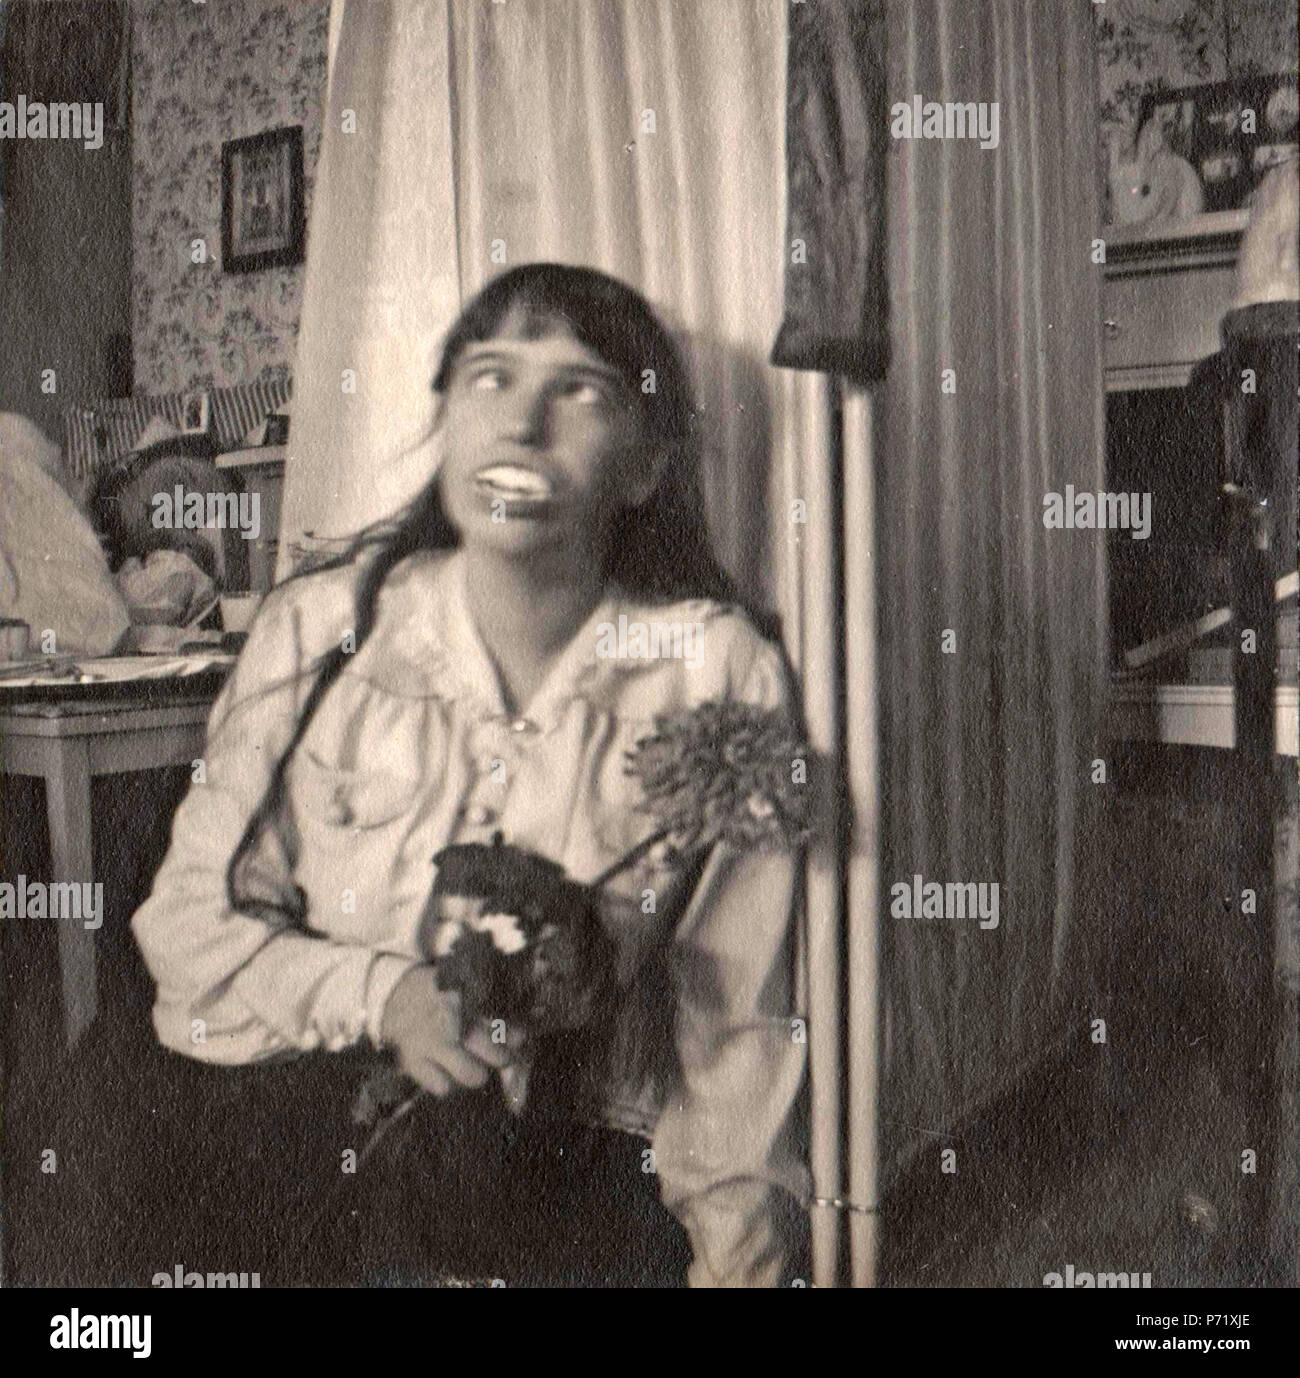 Inglés: Anastasia Nikolaevna de Rusia travesuras. 1915 o 1916 8 Anastasia Nikolaevna de Rusia jugando (original) Foto de stock